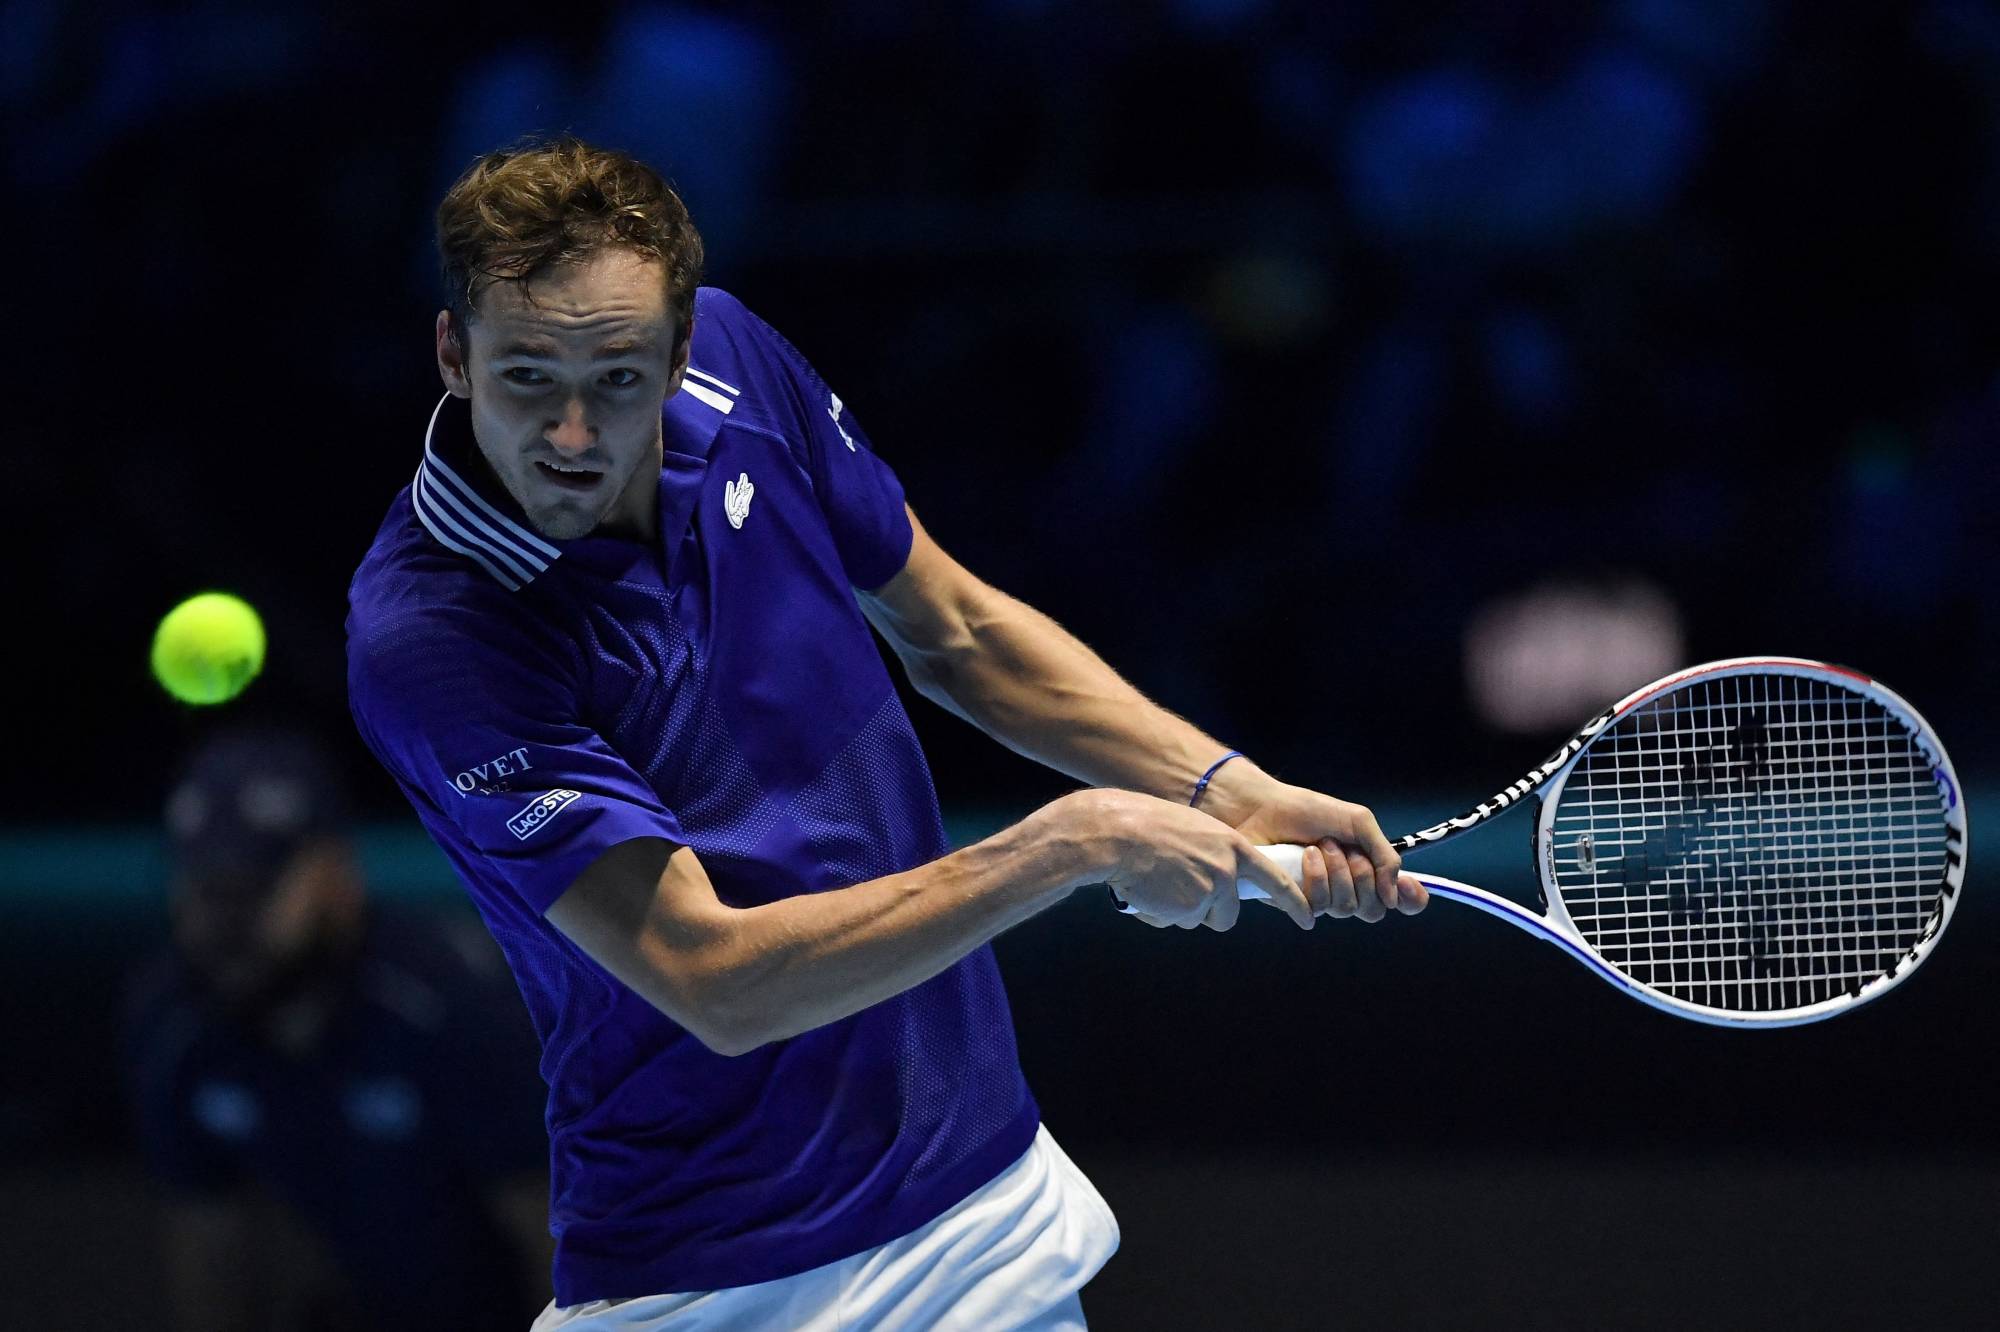 Defending champion Daniil Medvedev rallies to win ATP Finals opener